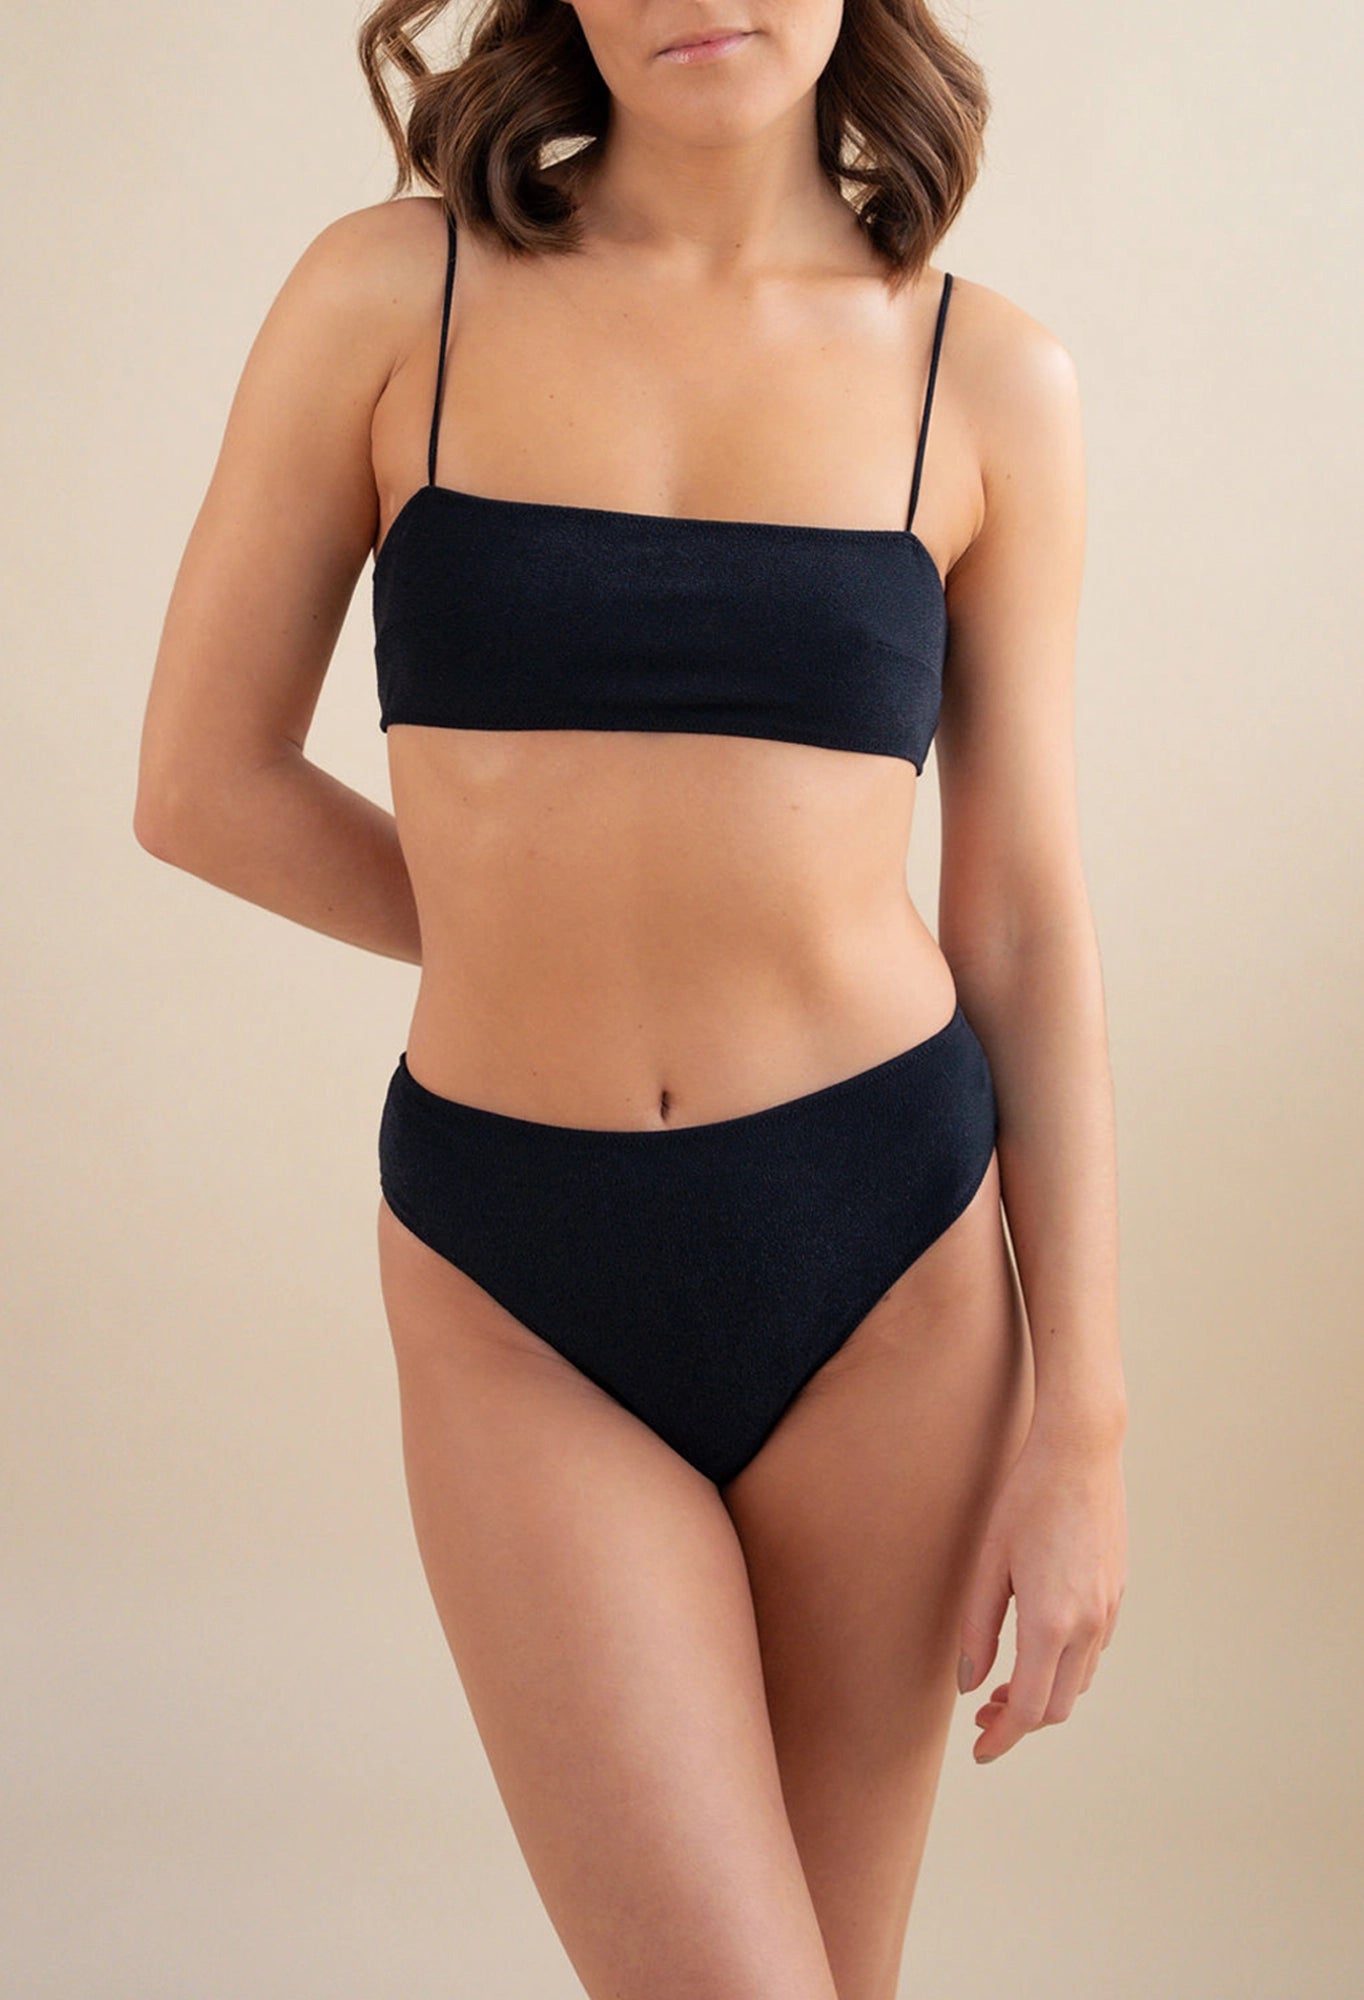 Ibiza bandeau - Swimwear bikini top